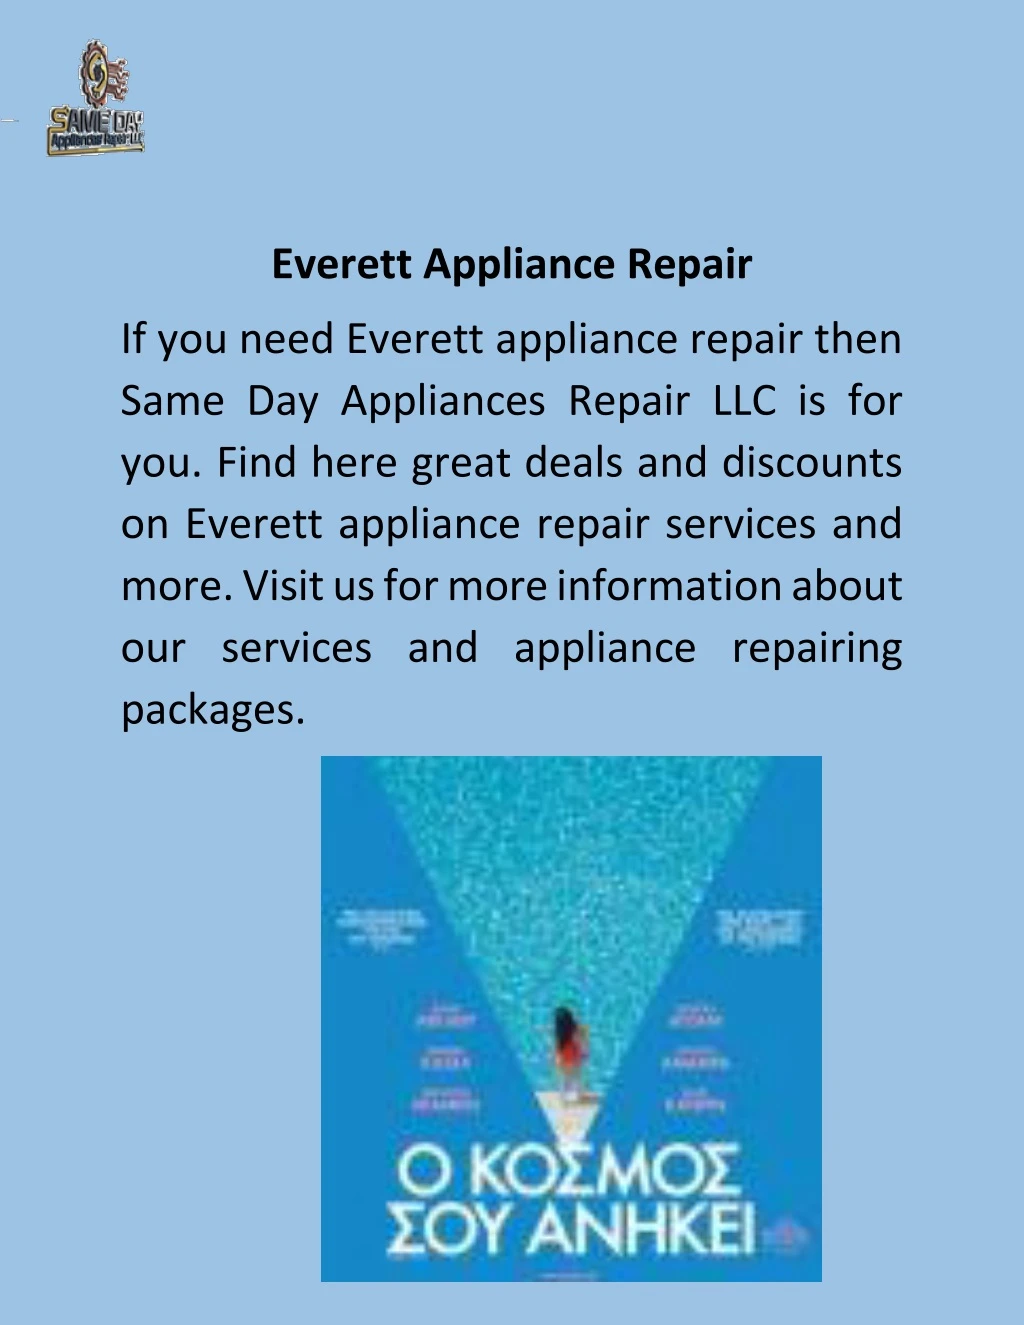 everett appliance repair n.